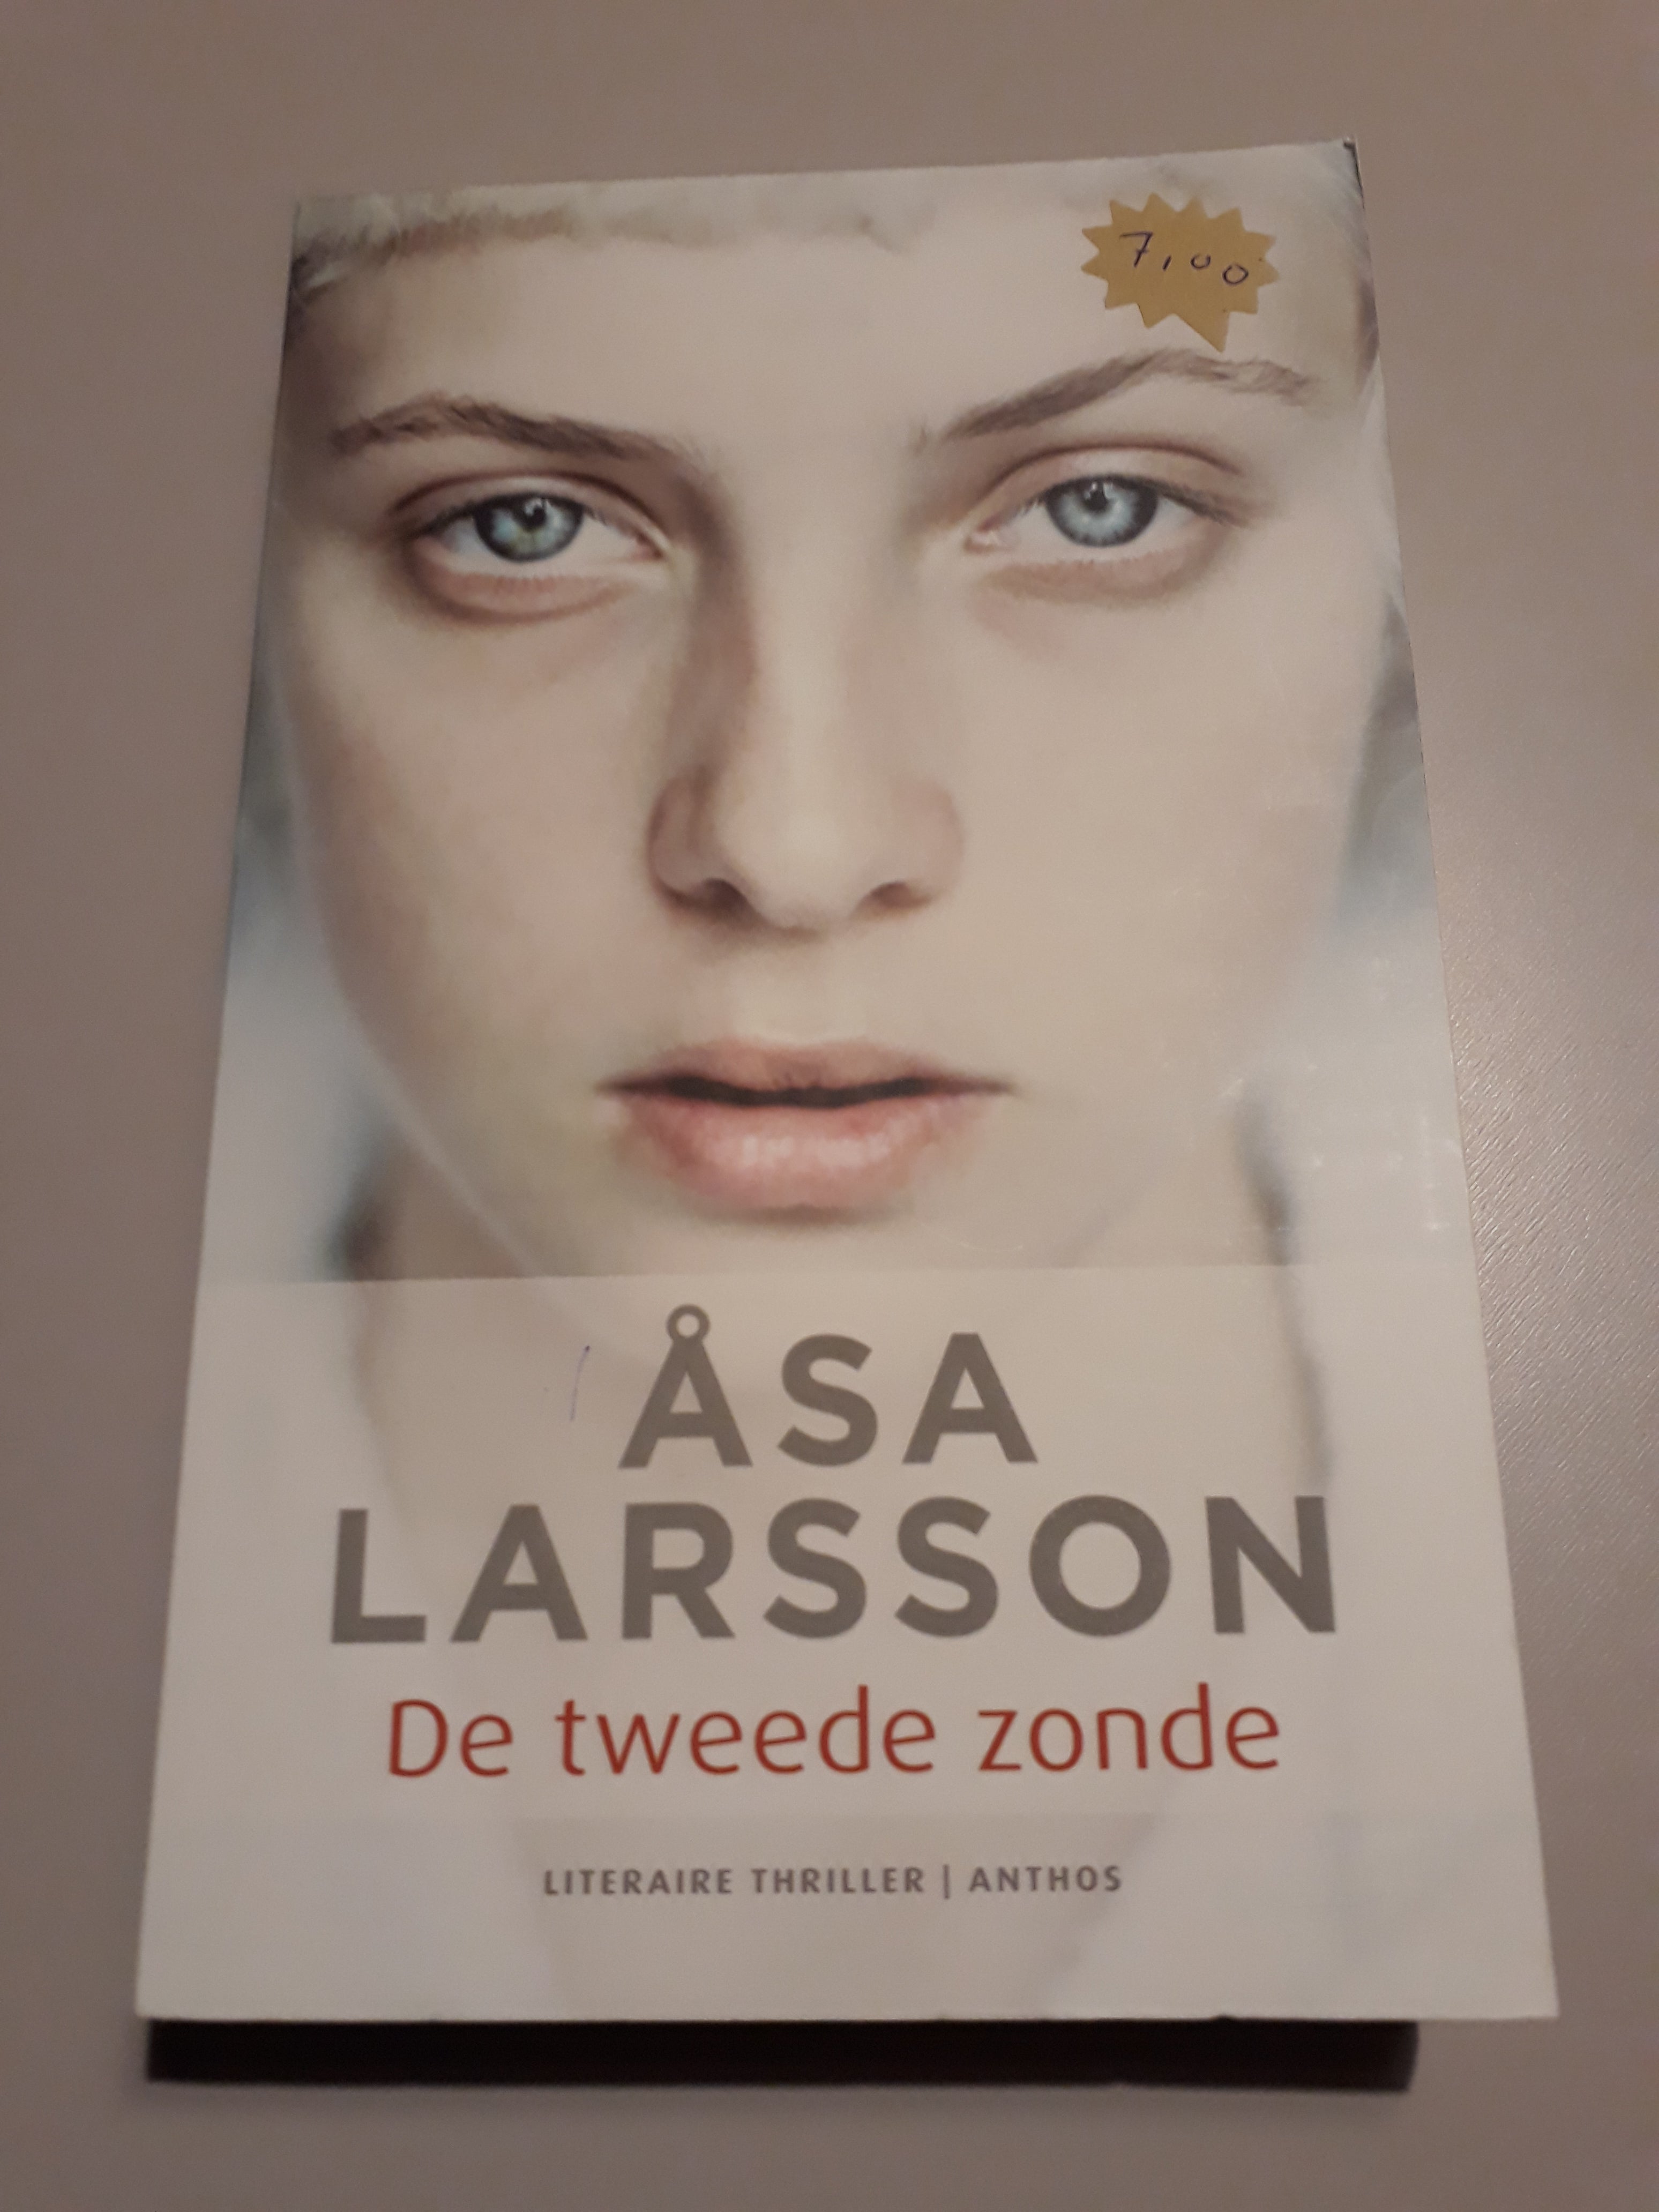 Åsa Larsson - De tweede zonde - 2dehands gebruikt